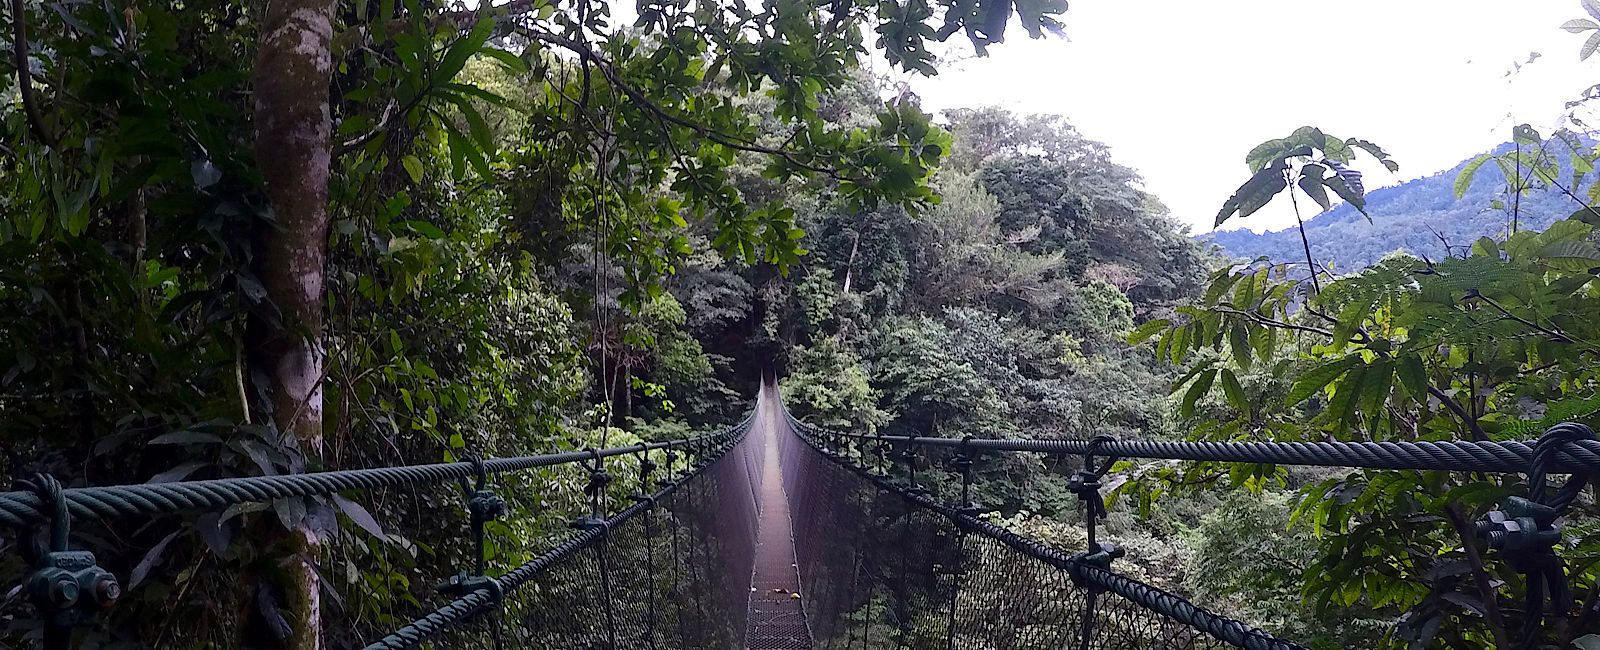 GRATULANTEN
 Magische Reise nach Costa Rica 
